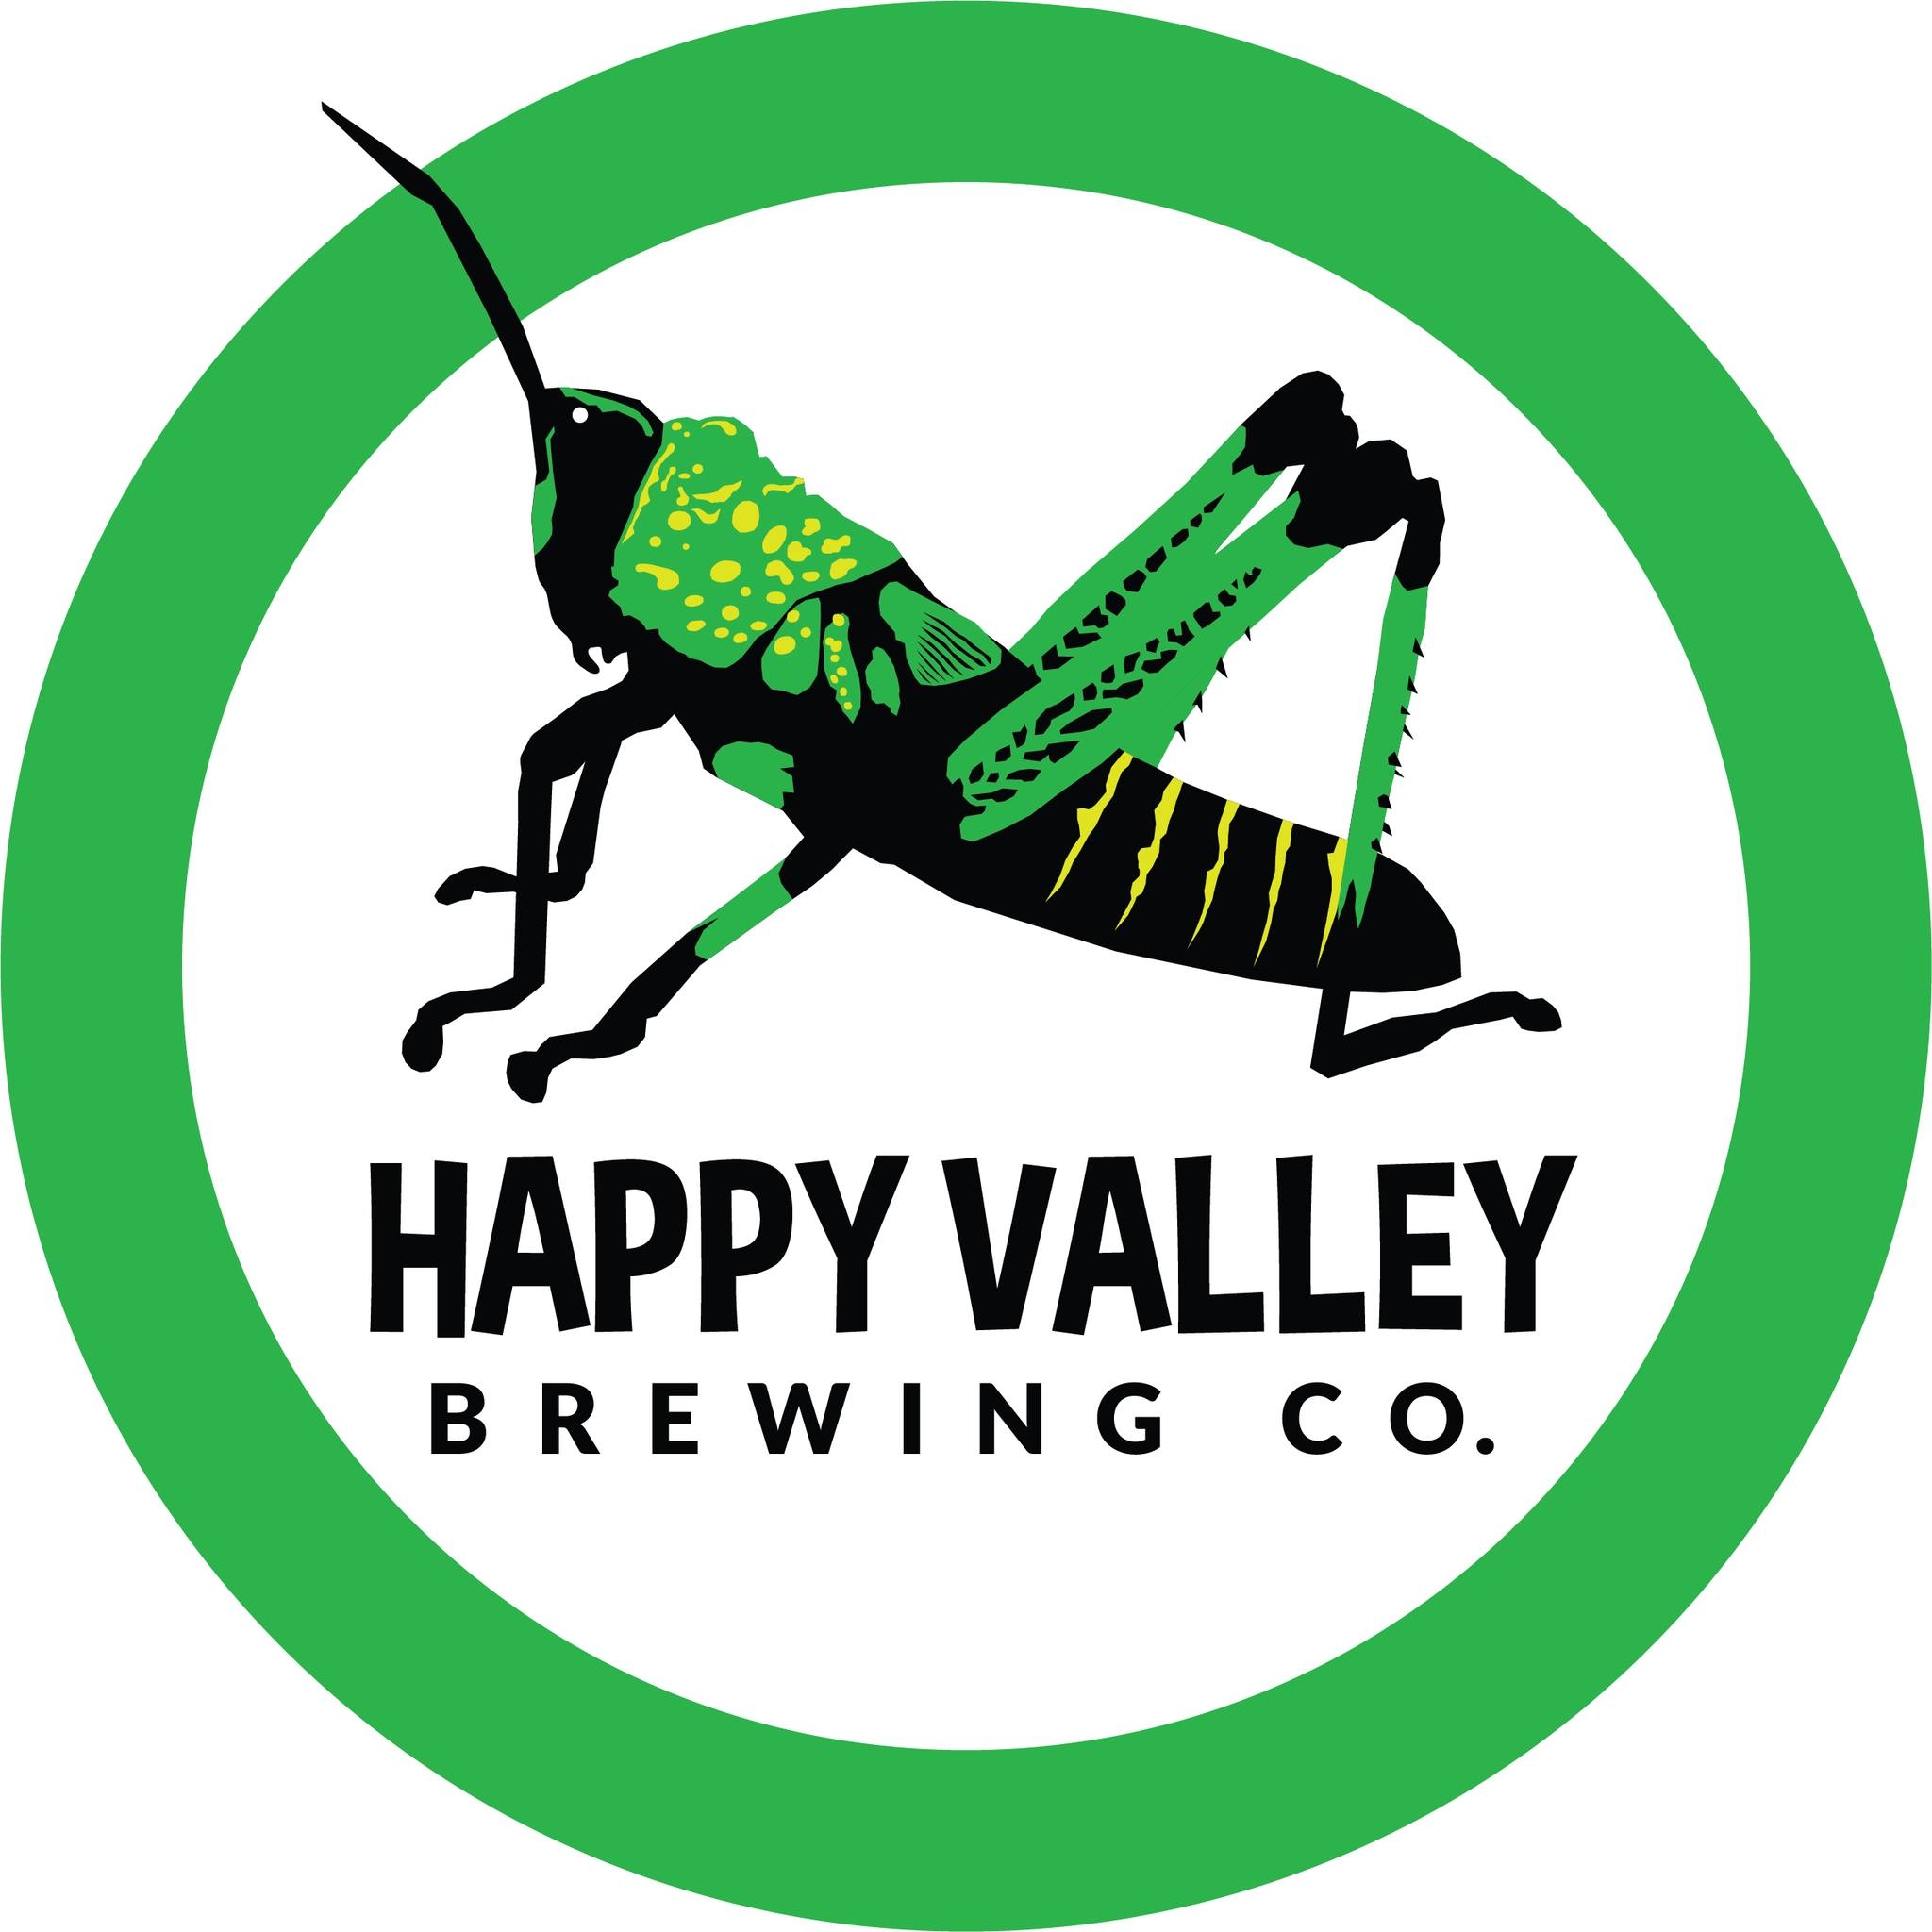 Happy Valley Brewing Co